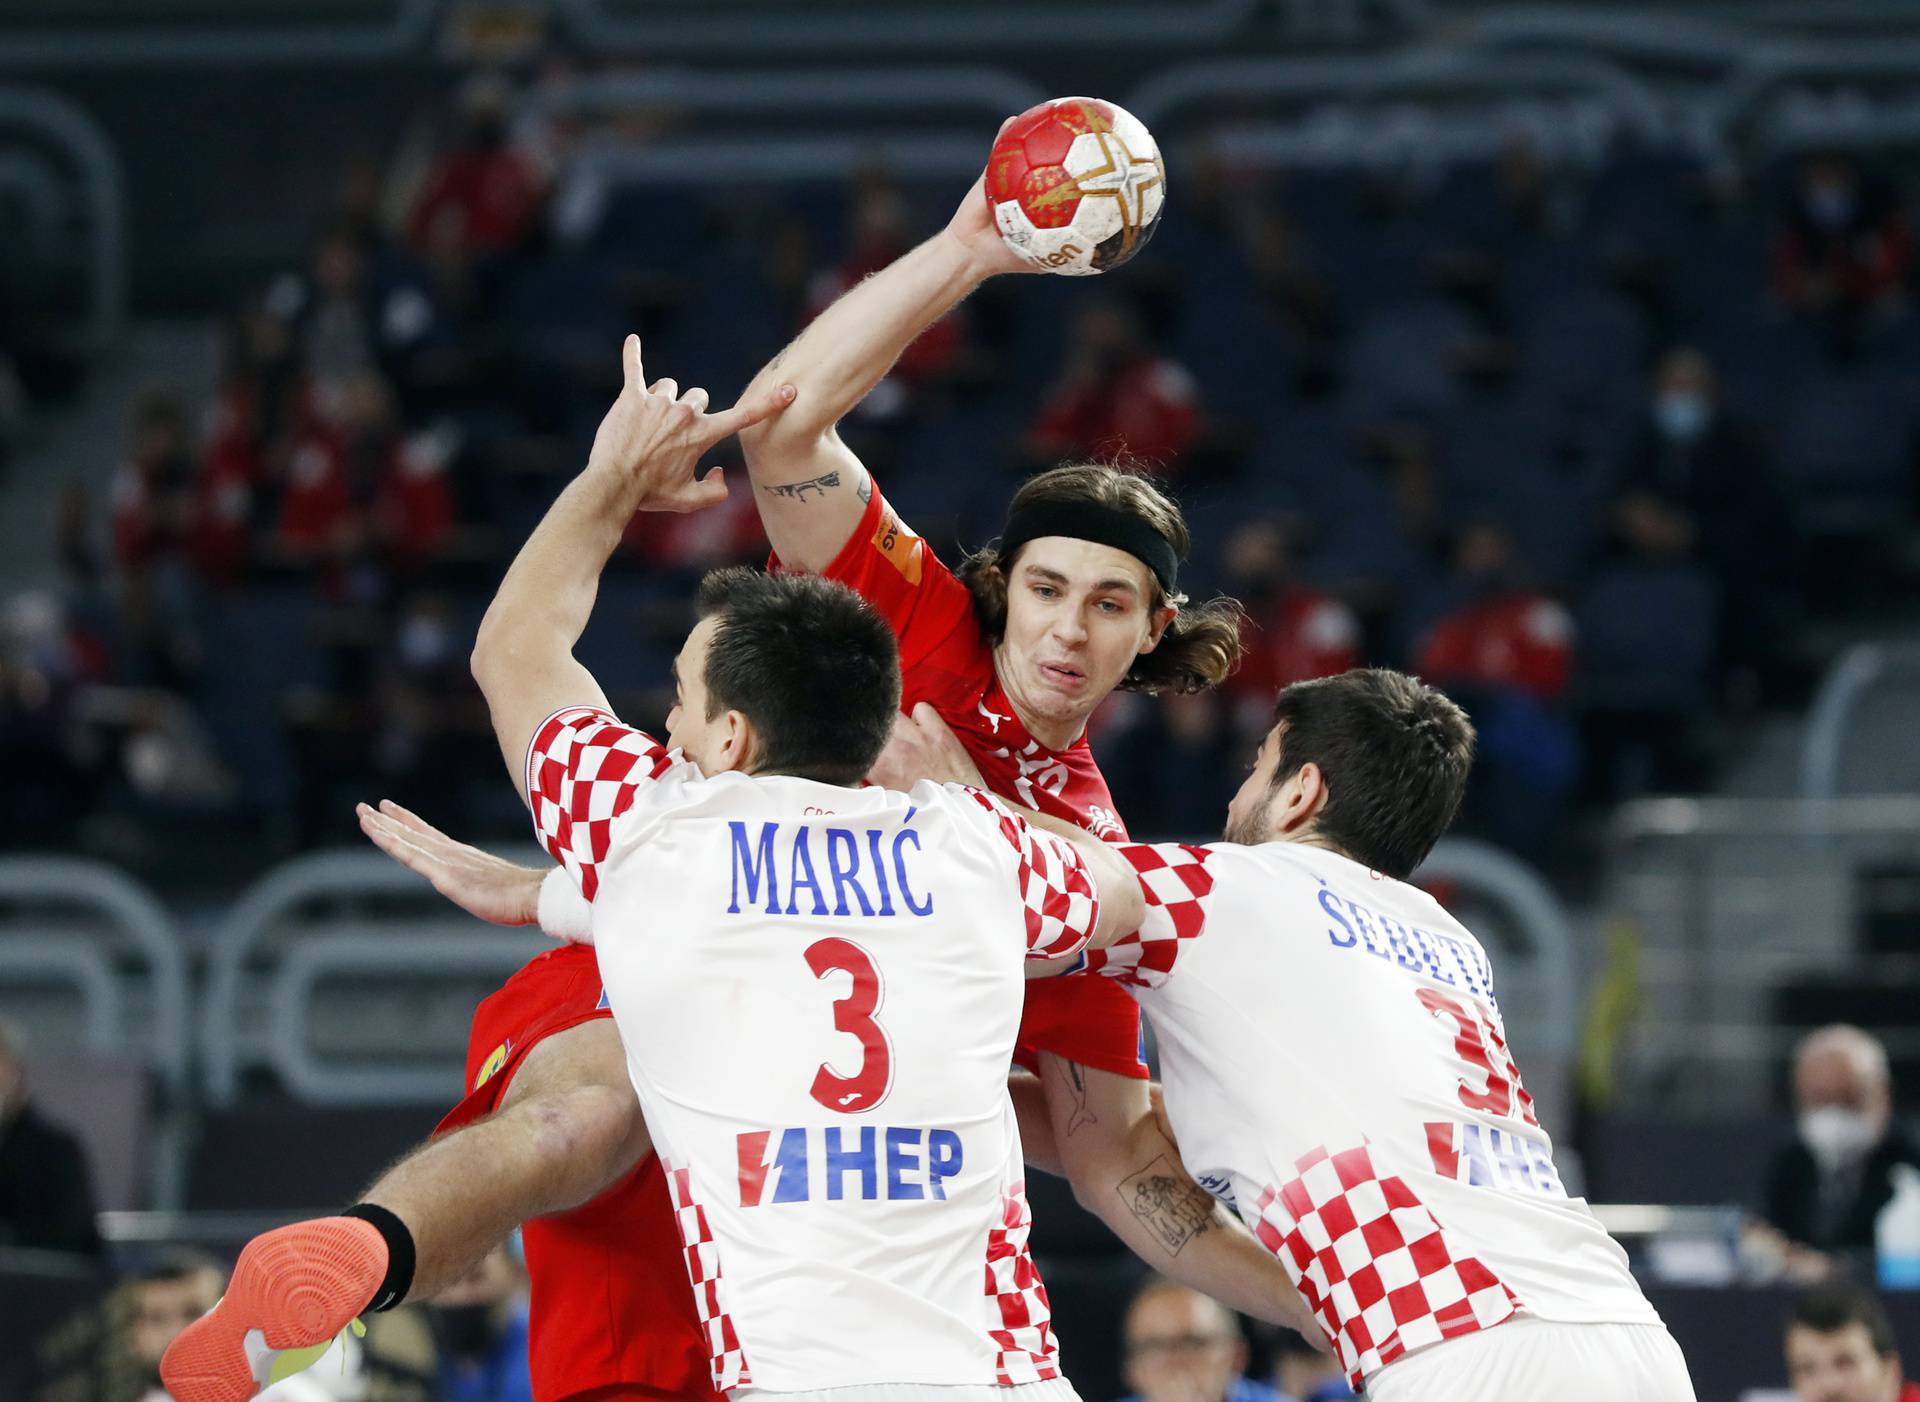 2021 IHF Handball World Championship - Main Round Group 2 - Denmark v Croatia